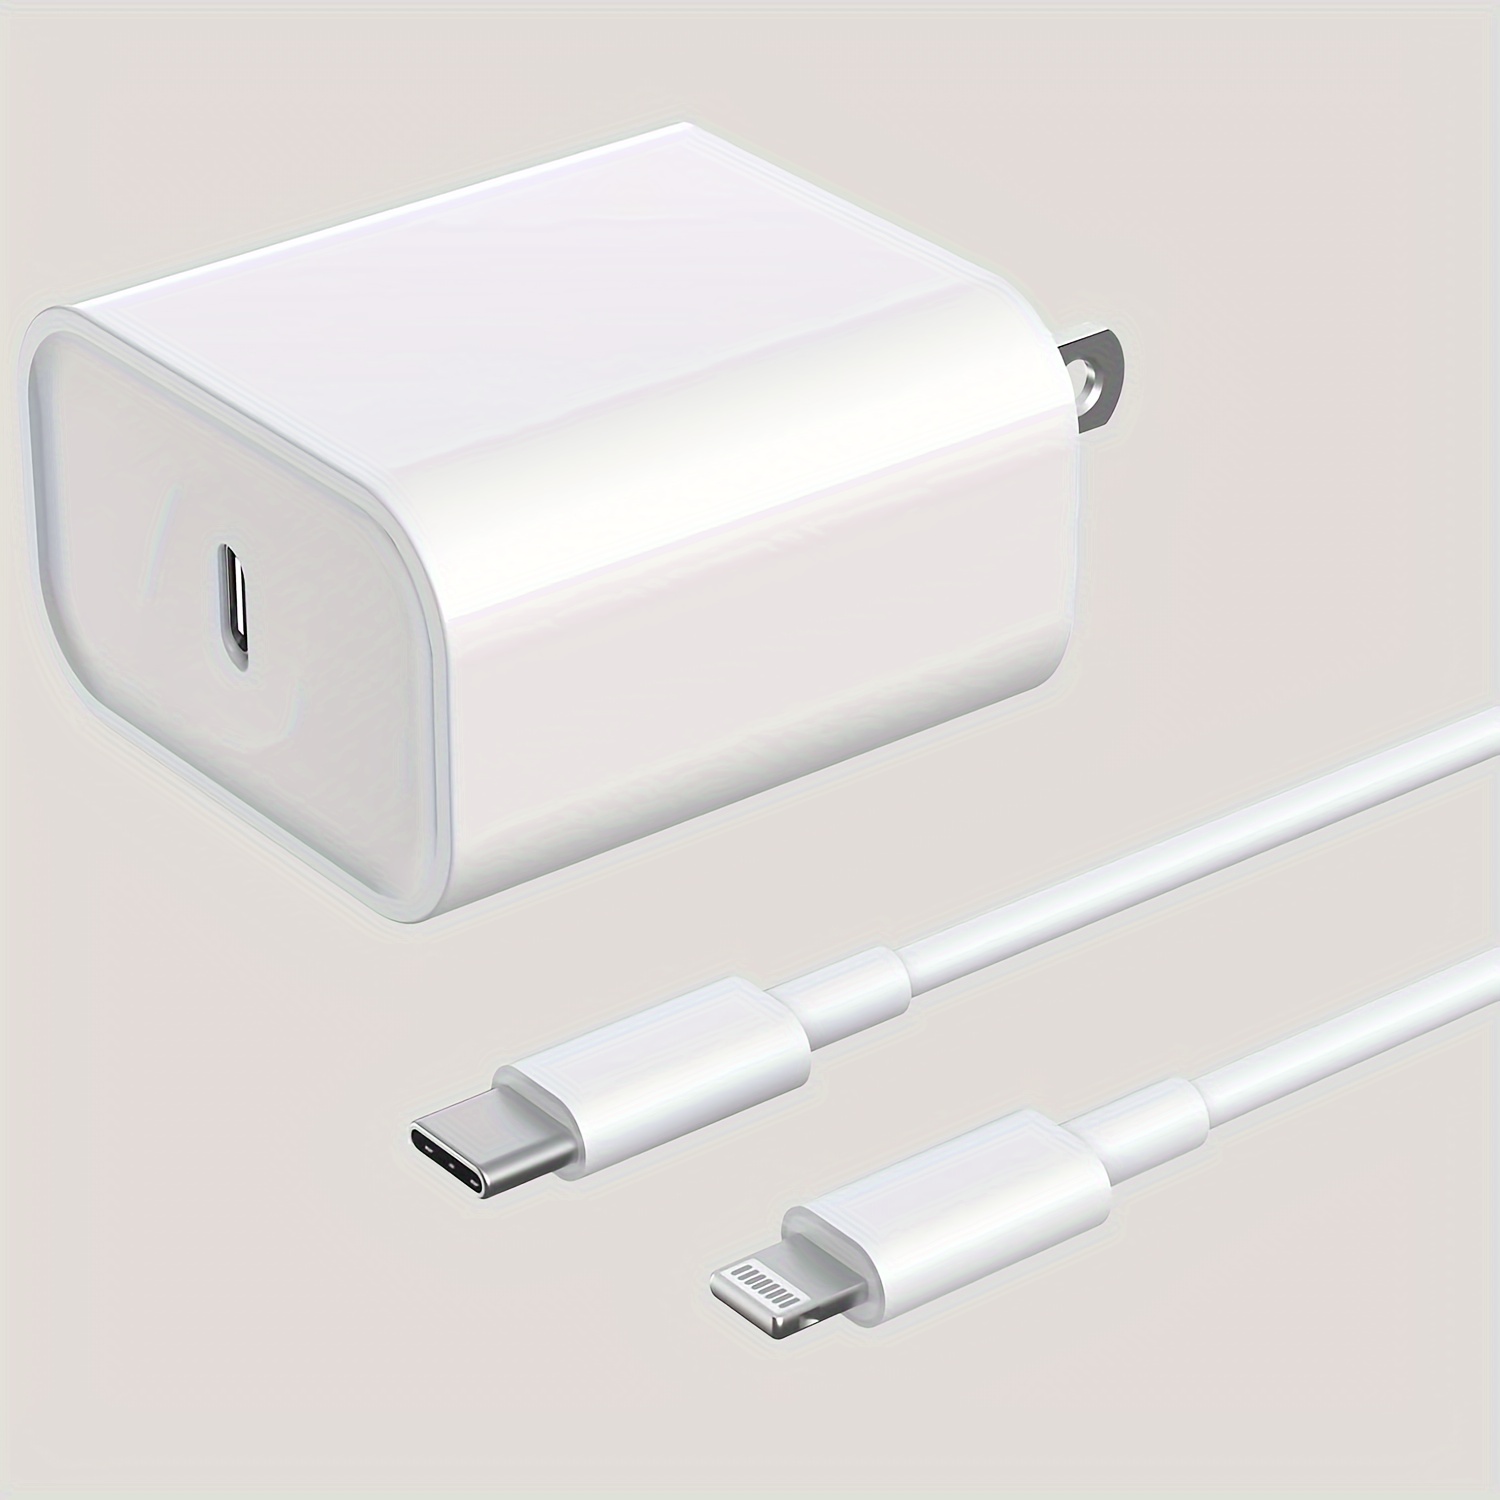  Cargador rápido para iPhone, cargador de Apple súper rápido  [certificado Apple MFi], paquete de 2 cables tipo C a Lightning de 10 pies  de largo, adaptador de bloque de cargador de